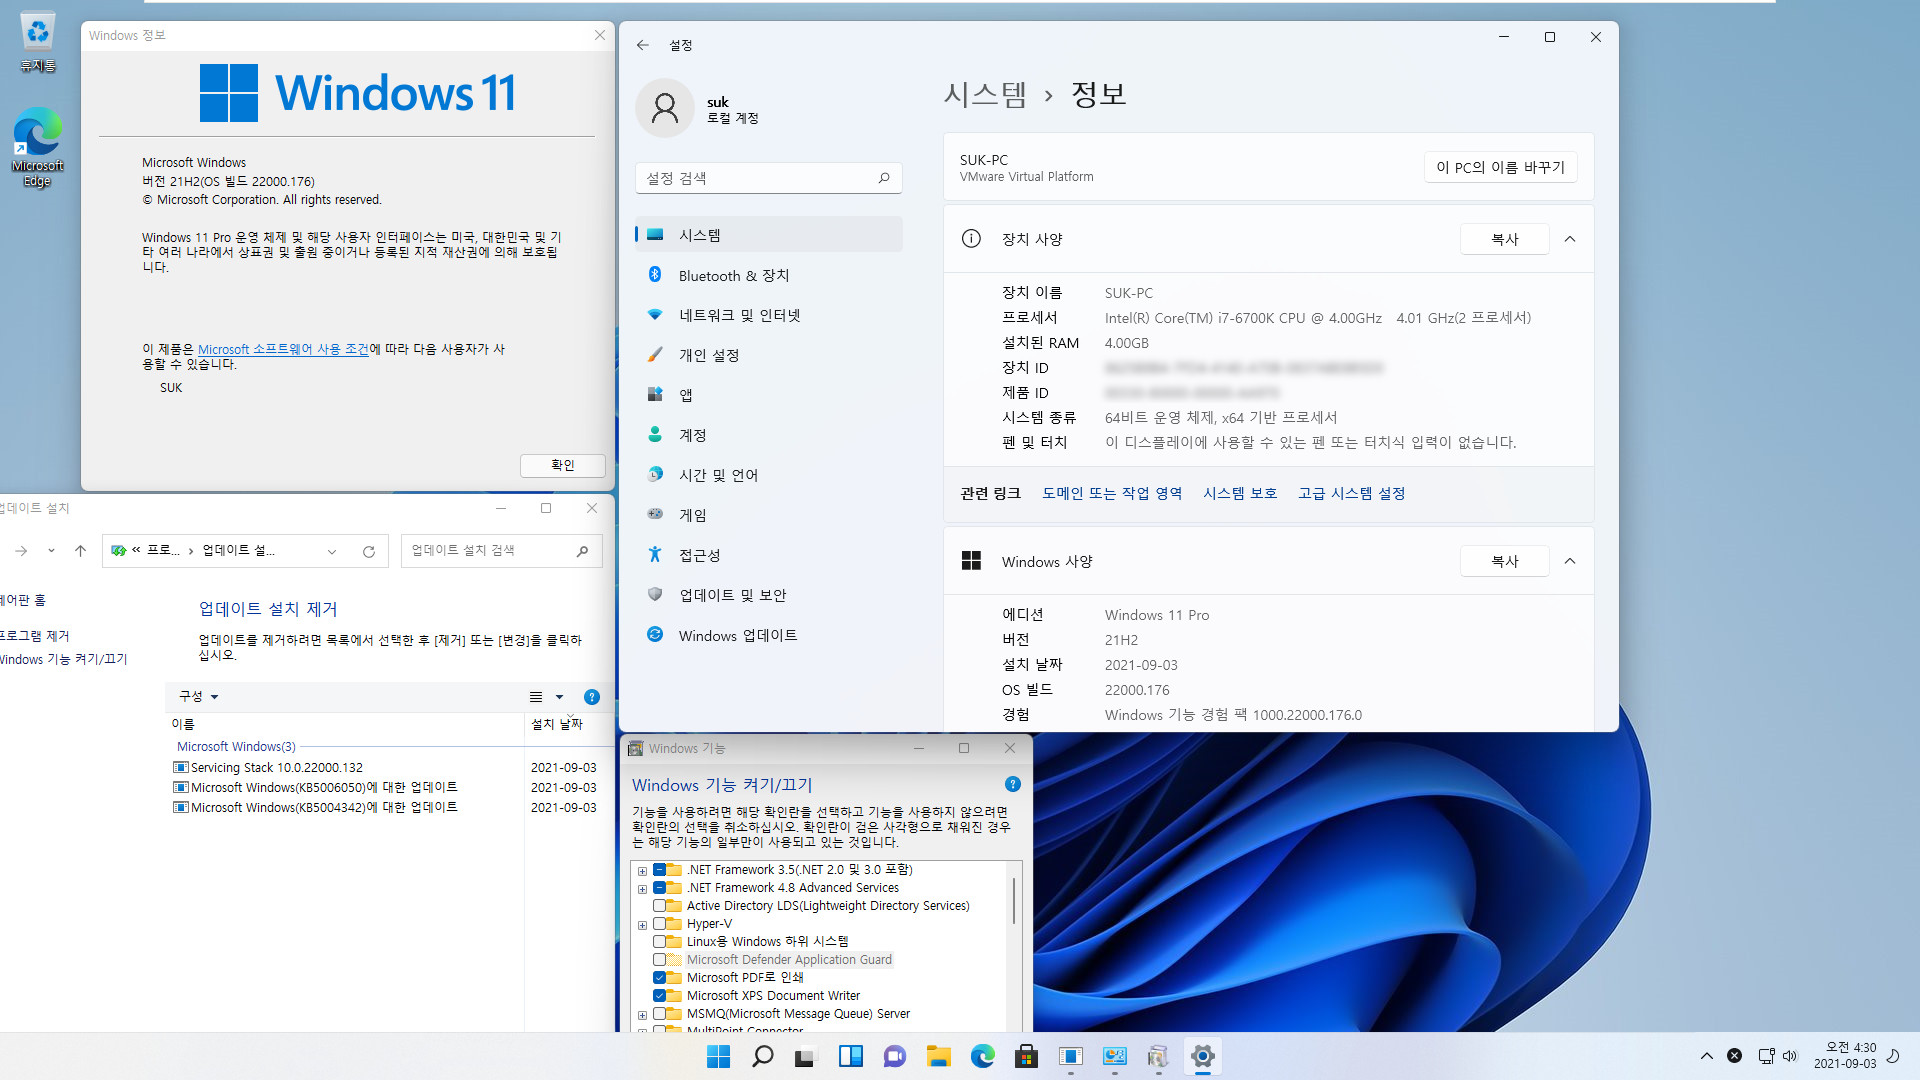 Windows 11 인사이더 프리뷰 - 버전 21H2 (OS 빌드 22000.176) 나왔네요 - 베타 채널 2021-09-03_043045.jpg